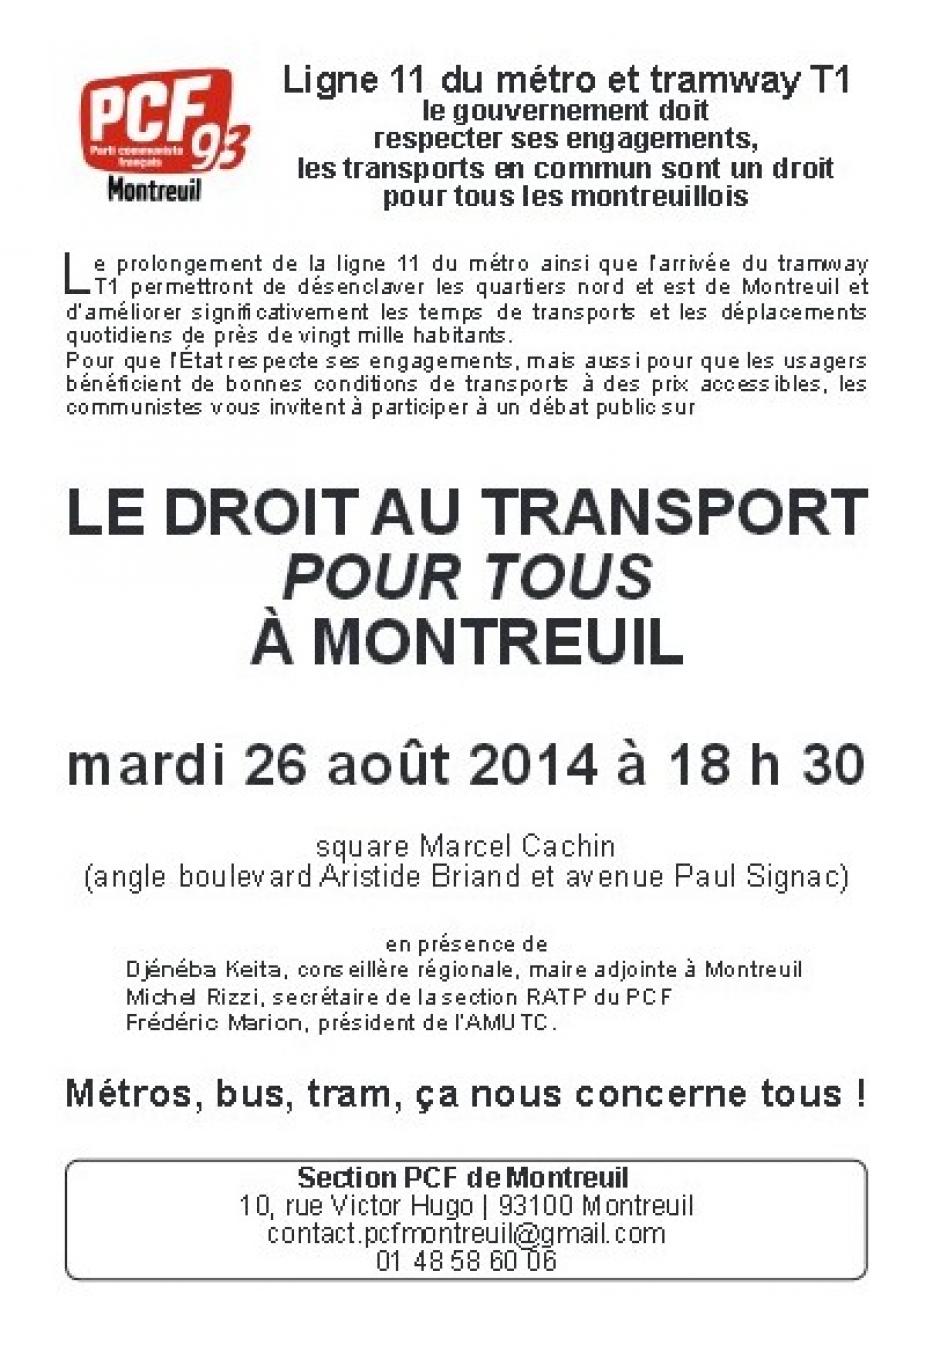 Le droit au transport pour tous à Montreuil